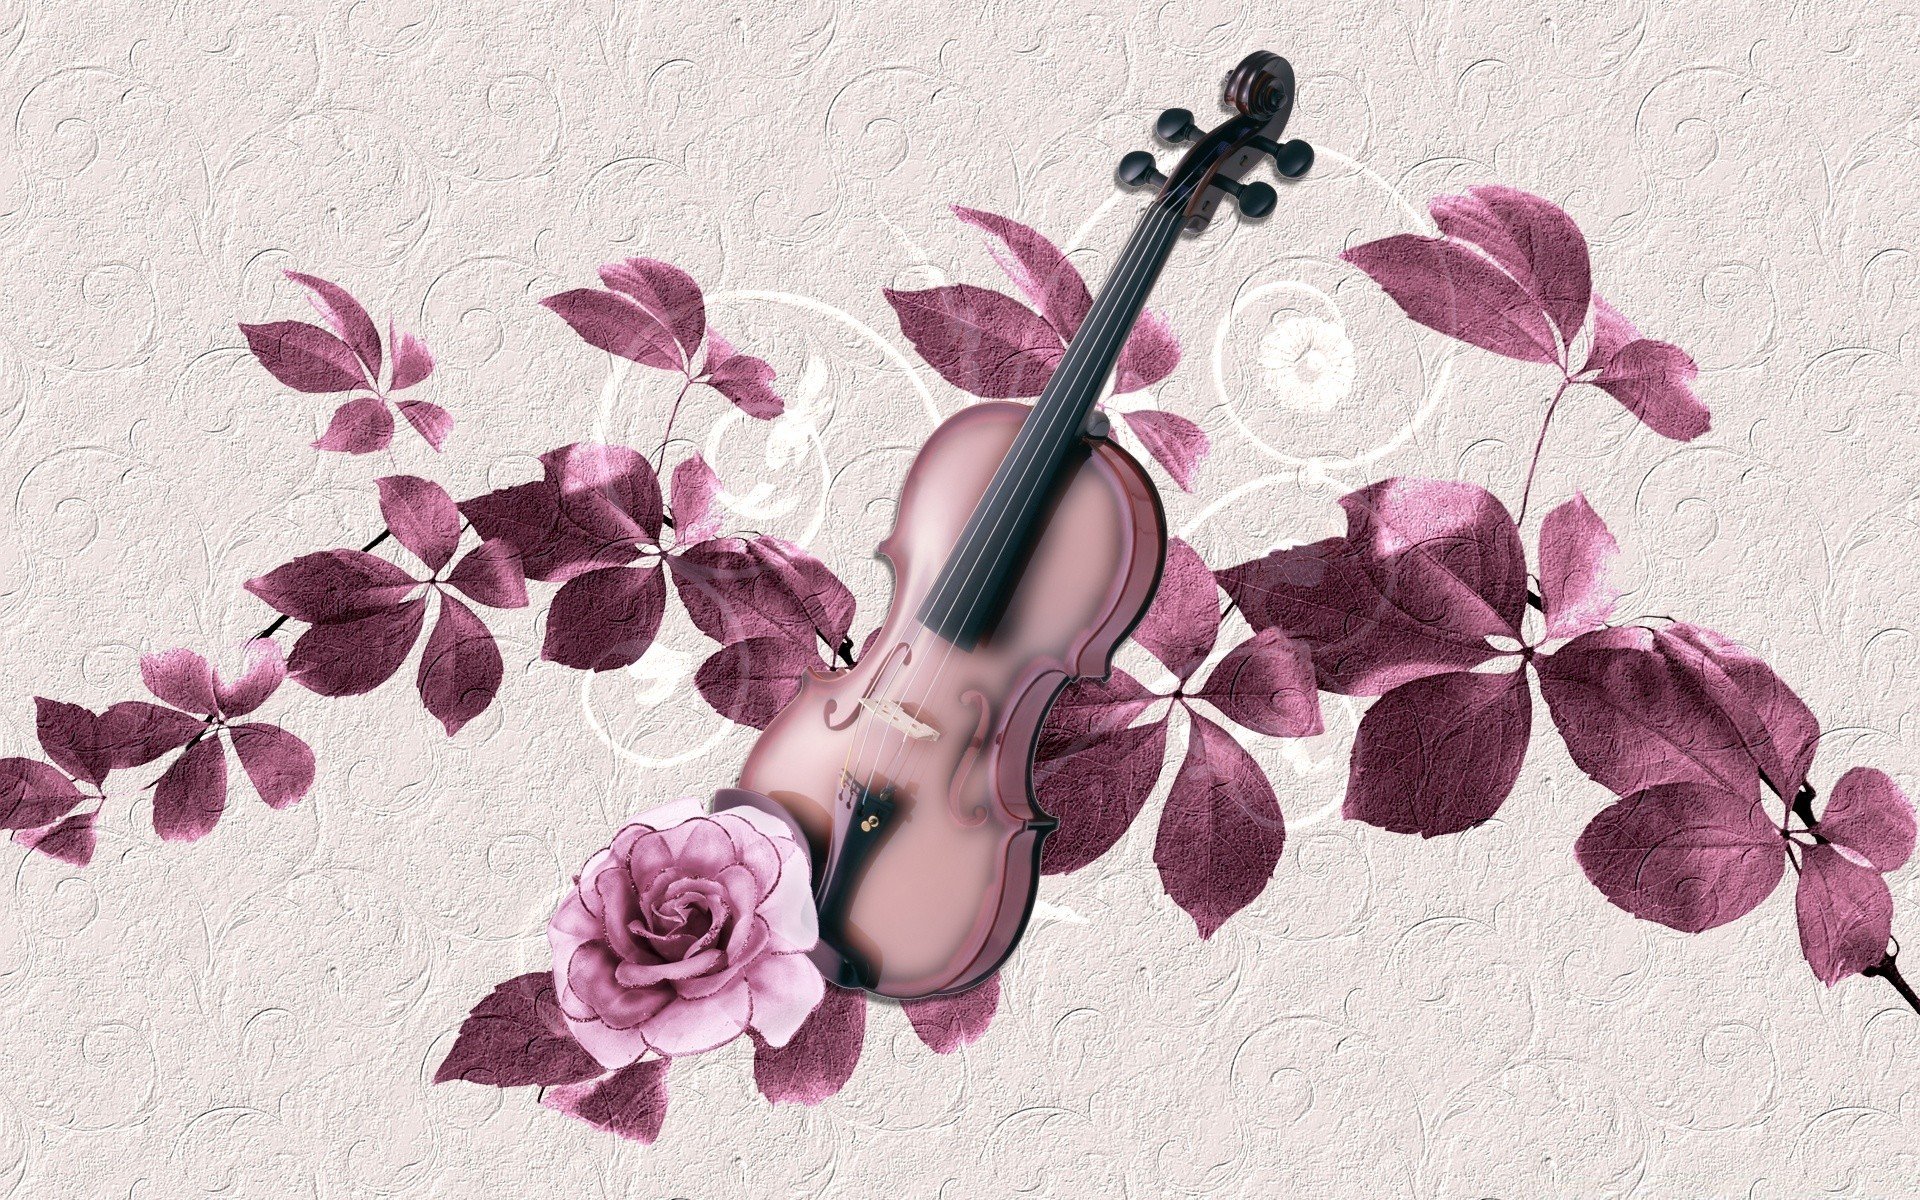 Рингтоны на телефон скрипка. Музыкальные инструменты и цветы. Музыкальный фон. Фотообои музыкальные. Скрипка на фоне цветов.